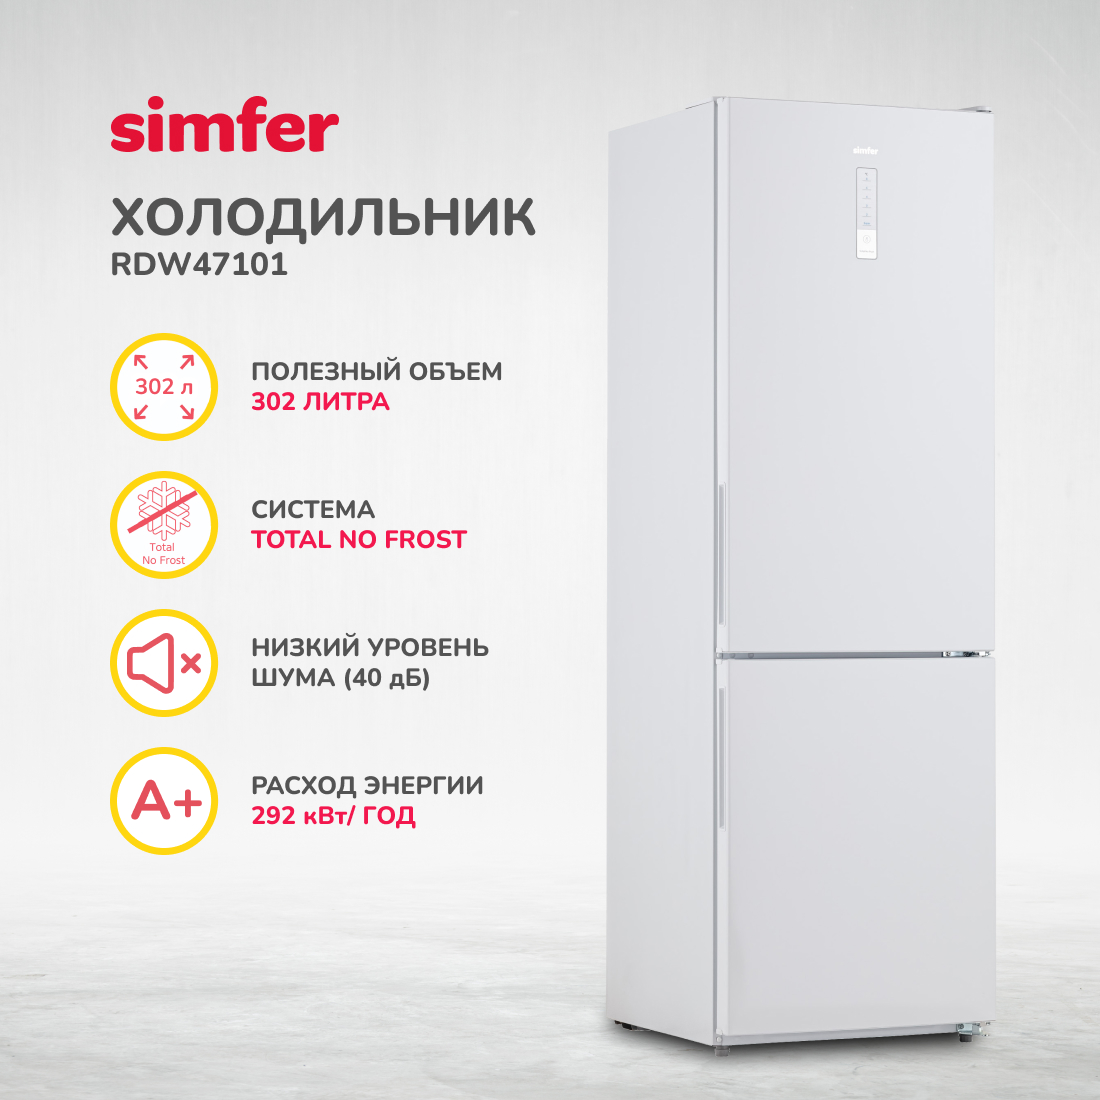 Холодильник Simfer RDW47101, No Frost, двухкамерный, 302 л, цвет белый - фото 1